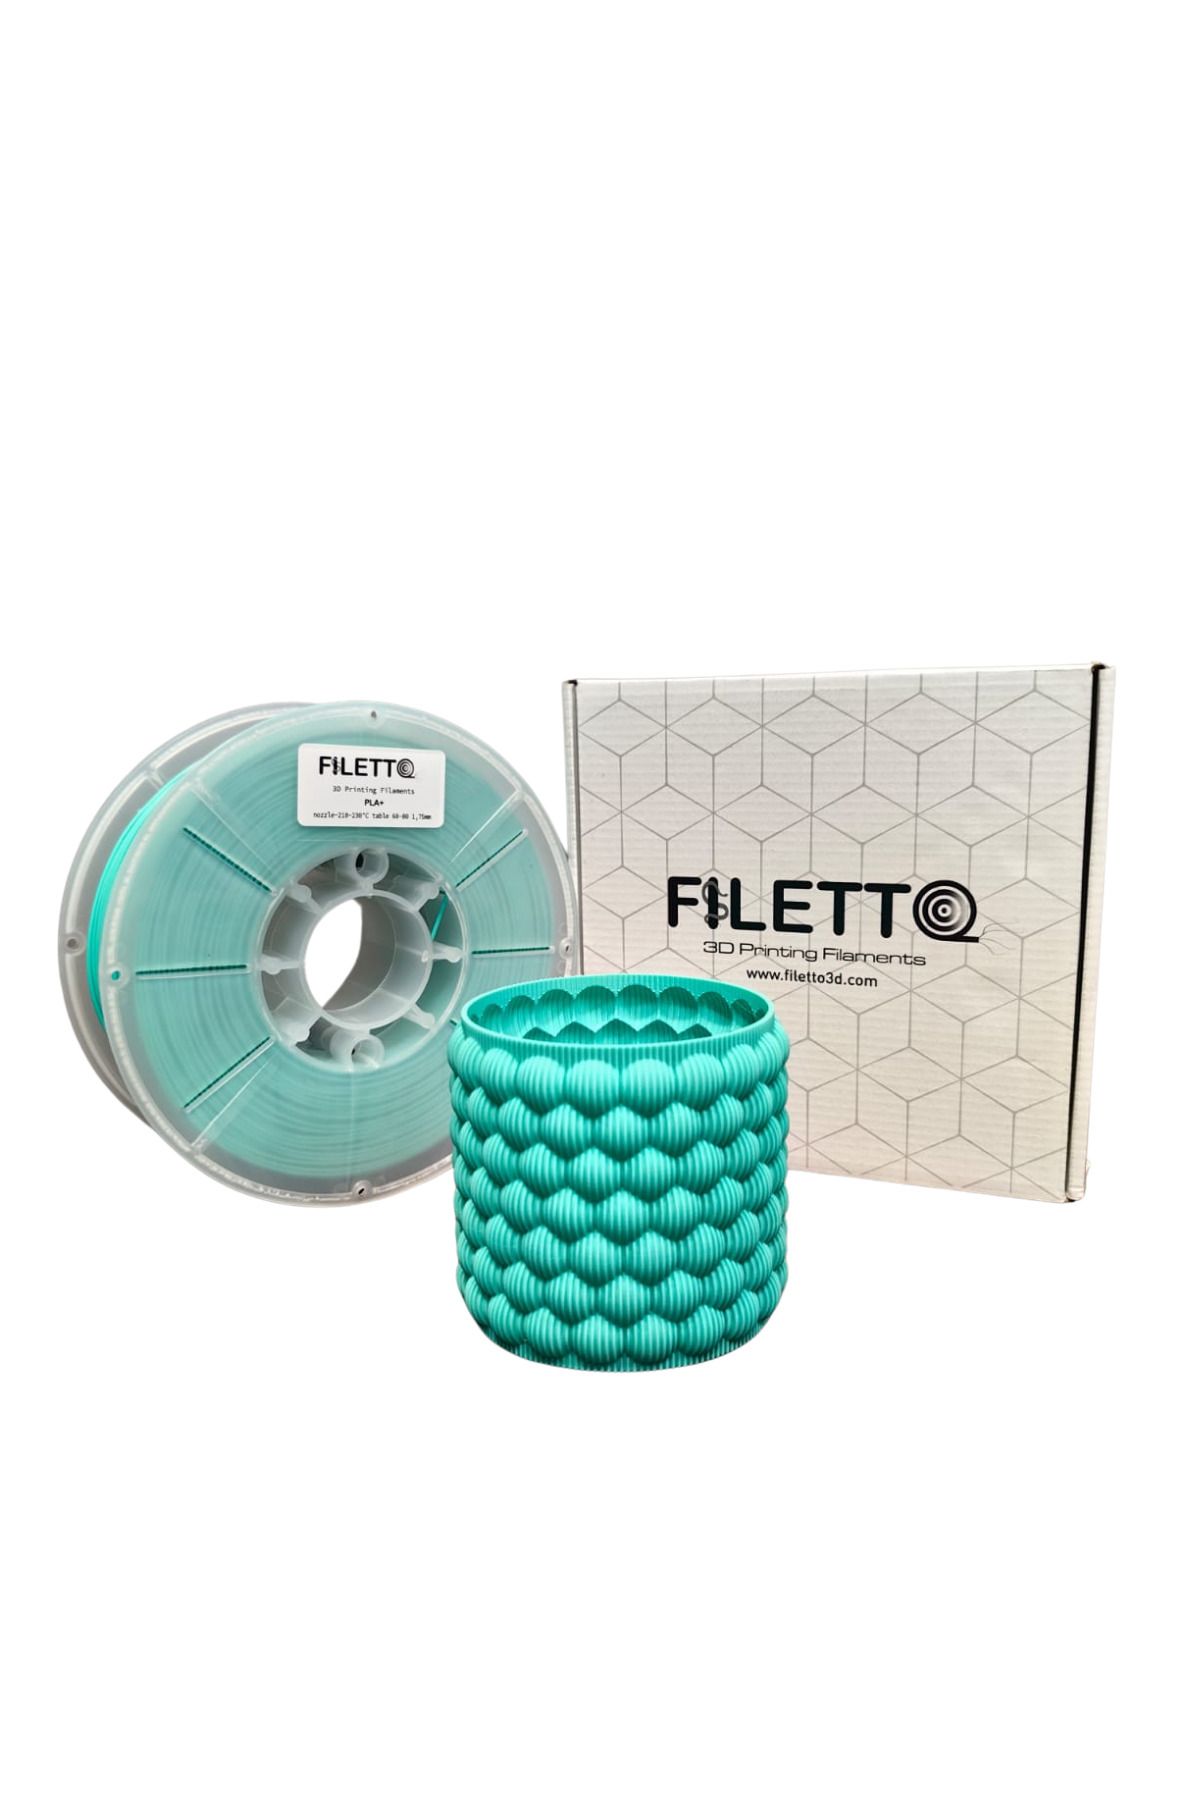 FİLETTO Filetto Pla+ Filament 1.75mm 1 KG - Turkuaz